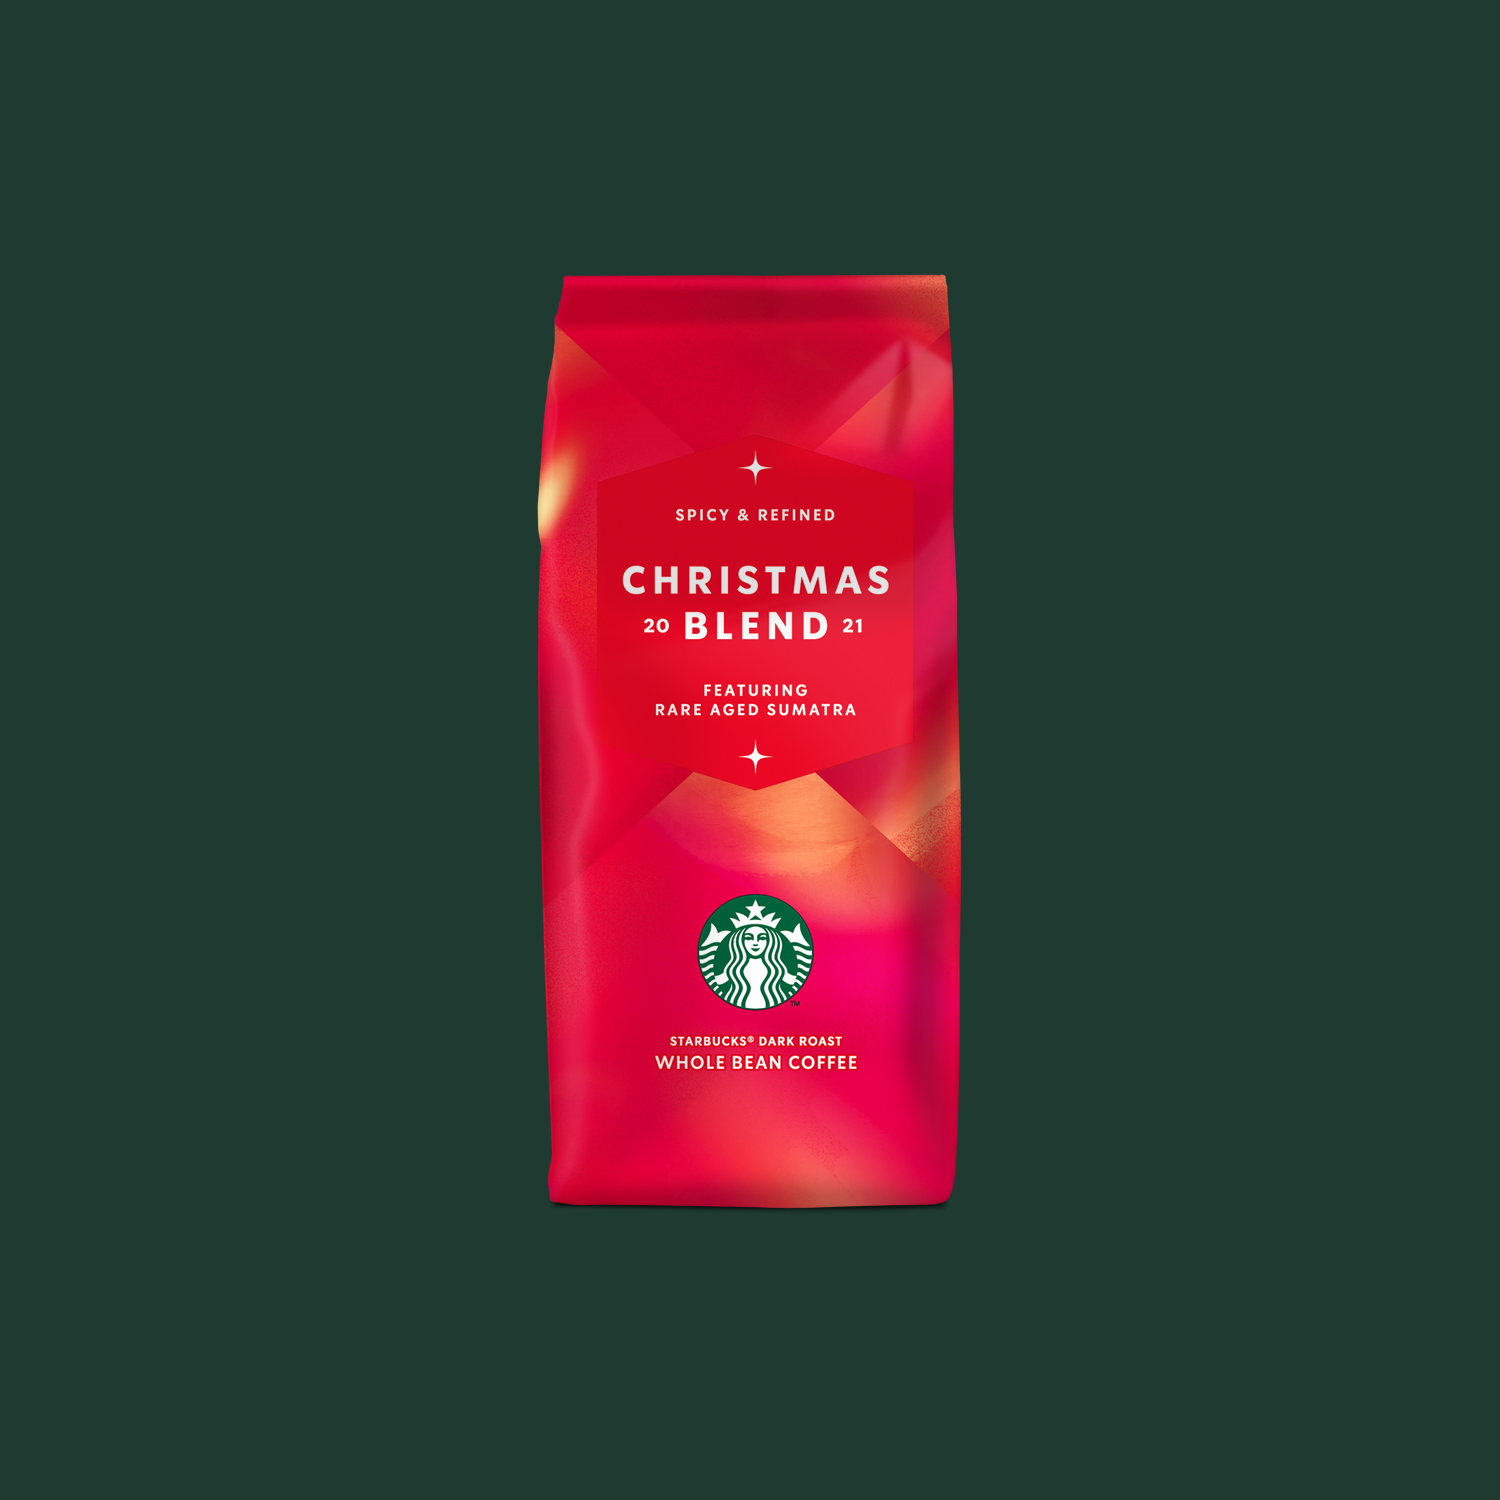  دان قهوه کریسمس بلند Christmas Blend برند استارباکس 250 گرمی (لیمیتد ادیشن کریسمس)